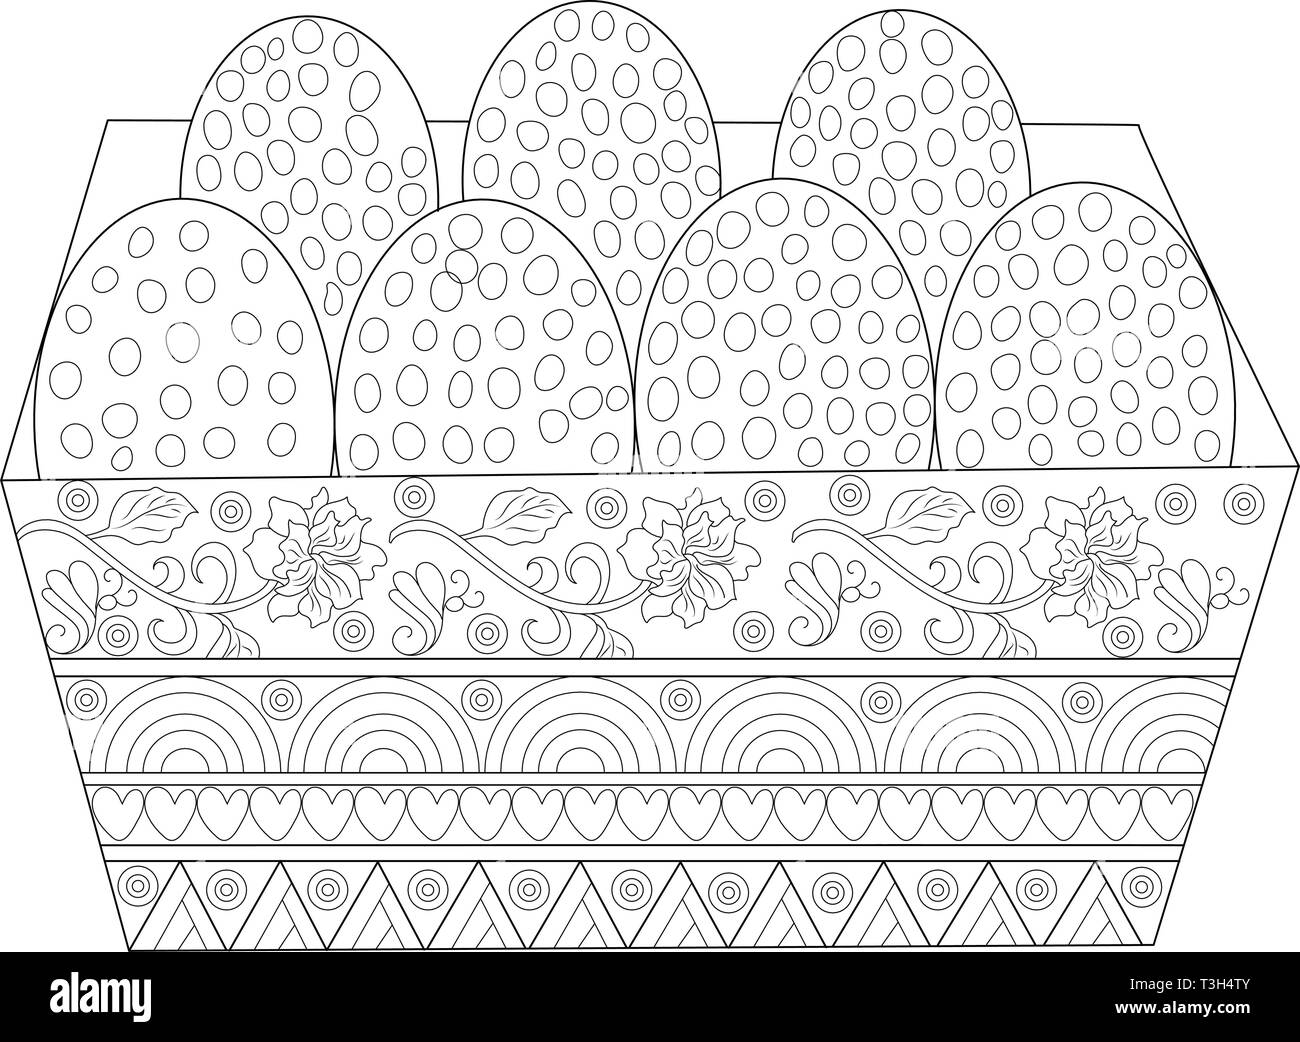 Easter Egg Fach mit 7 Eiern in der bunten Dekoration Schwarz und Weiß Stock Vektor